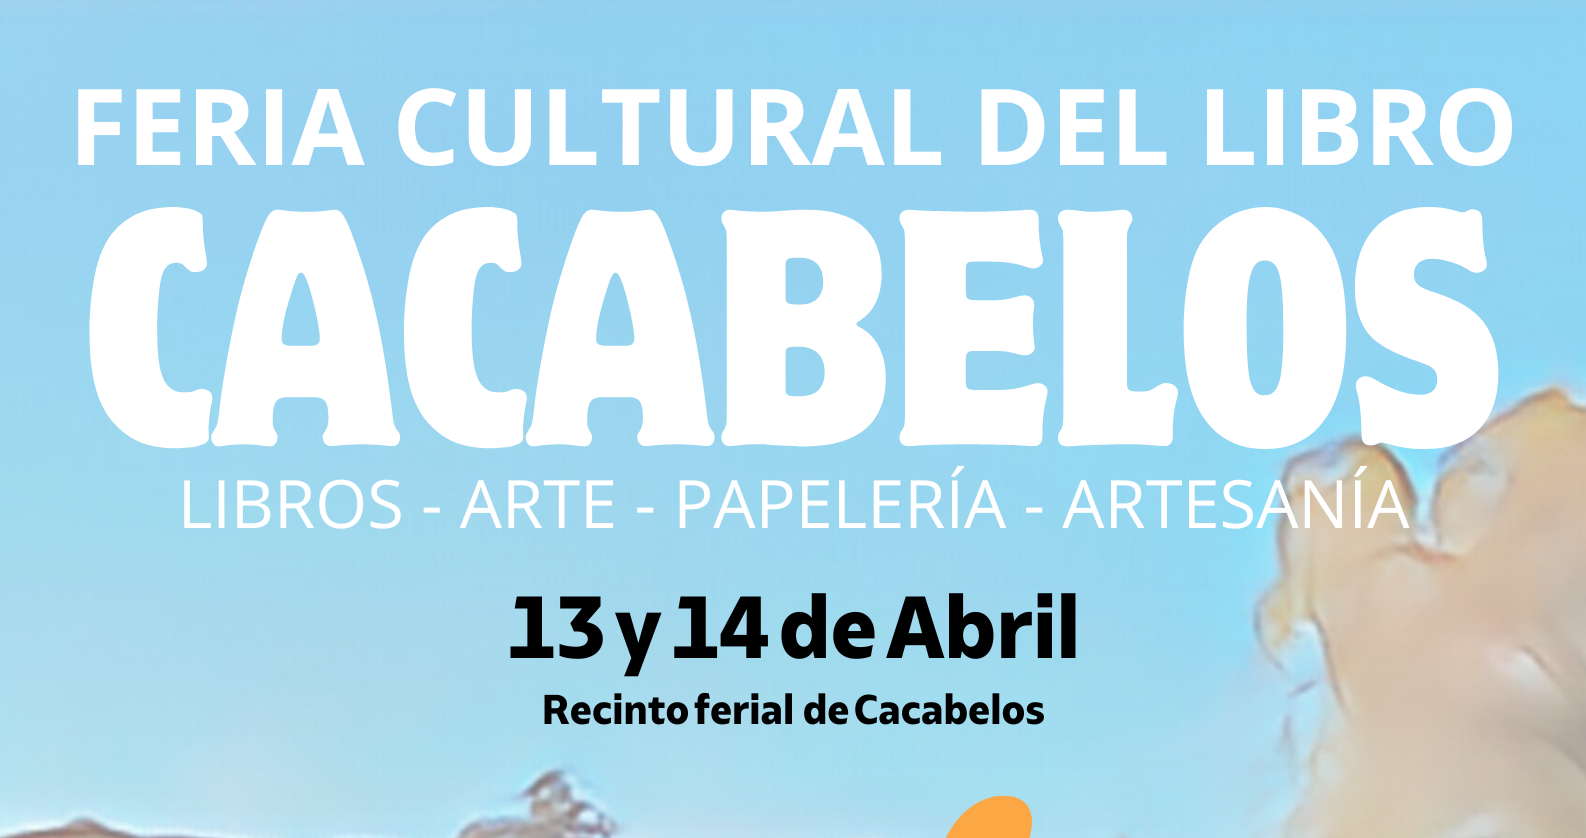 Cacabelos estrena la I edición de su Feria Cultural del libro el 13 y 14 de abril en el recinto ferial 1